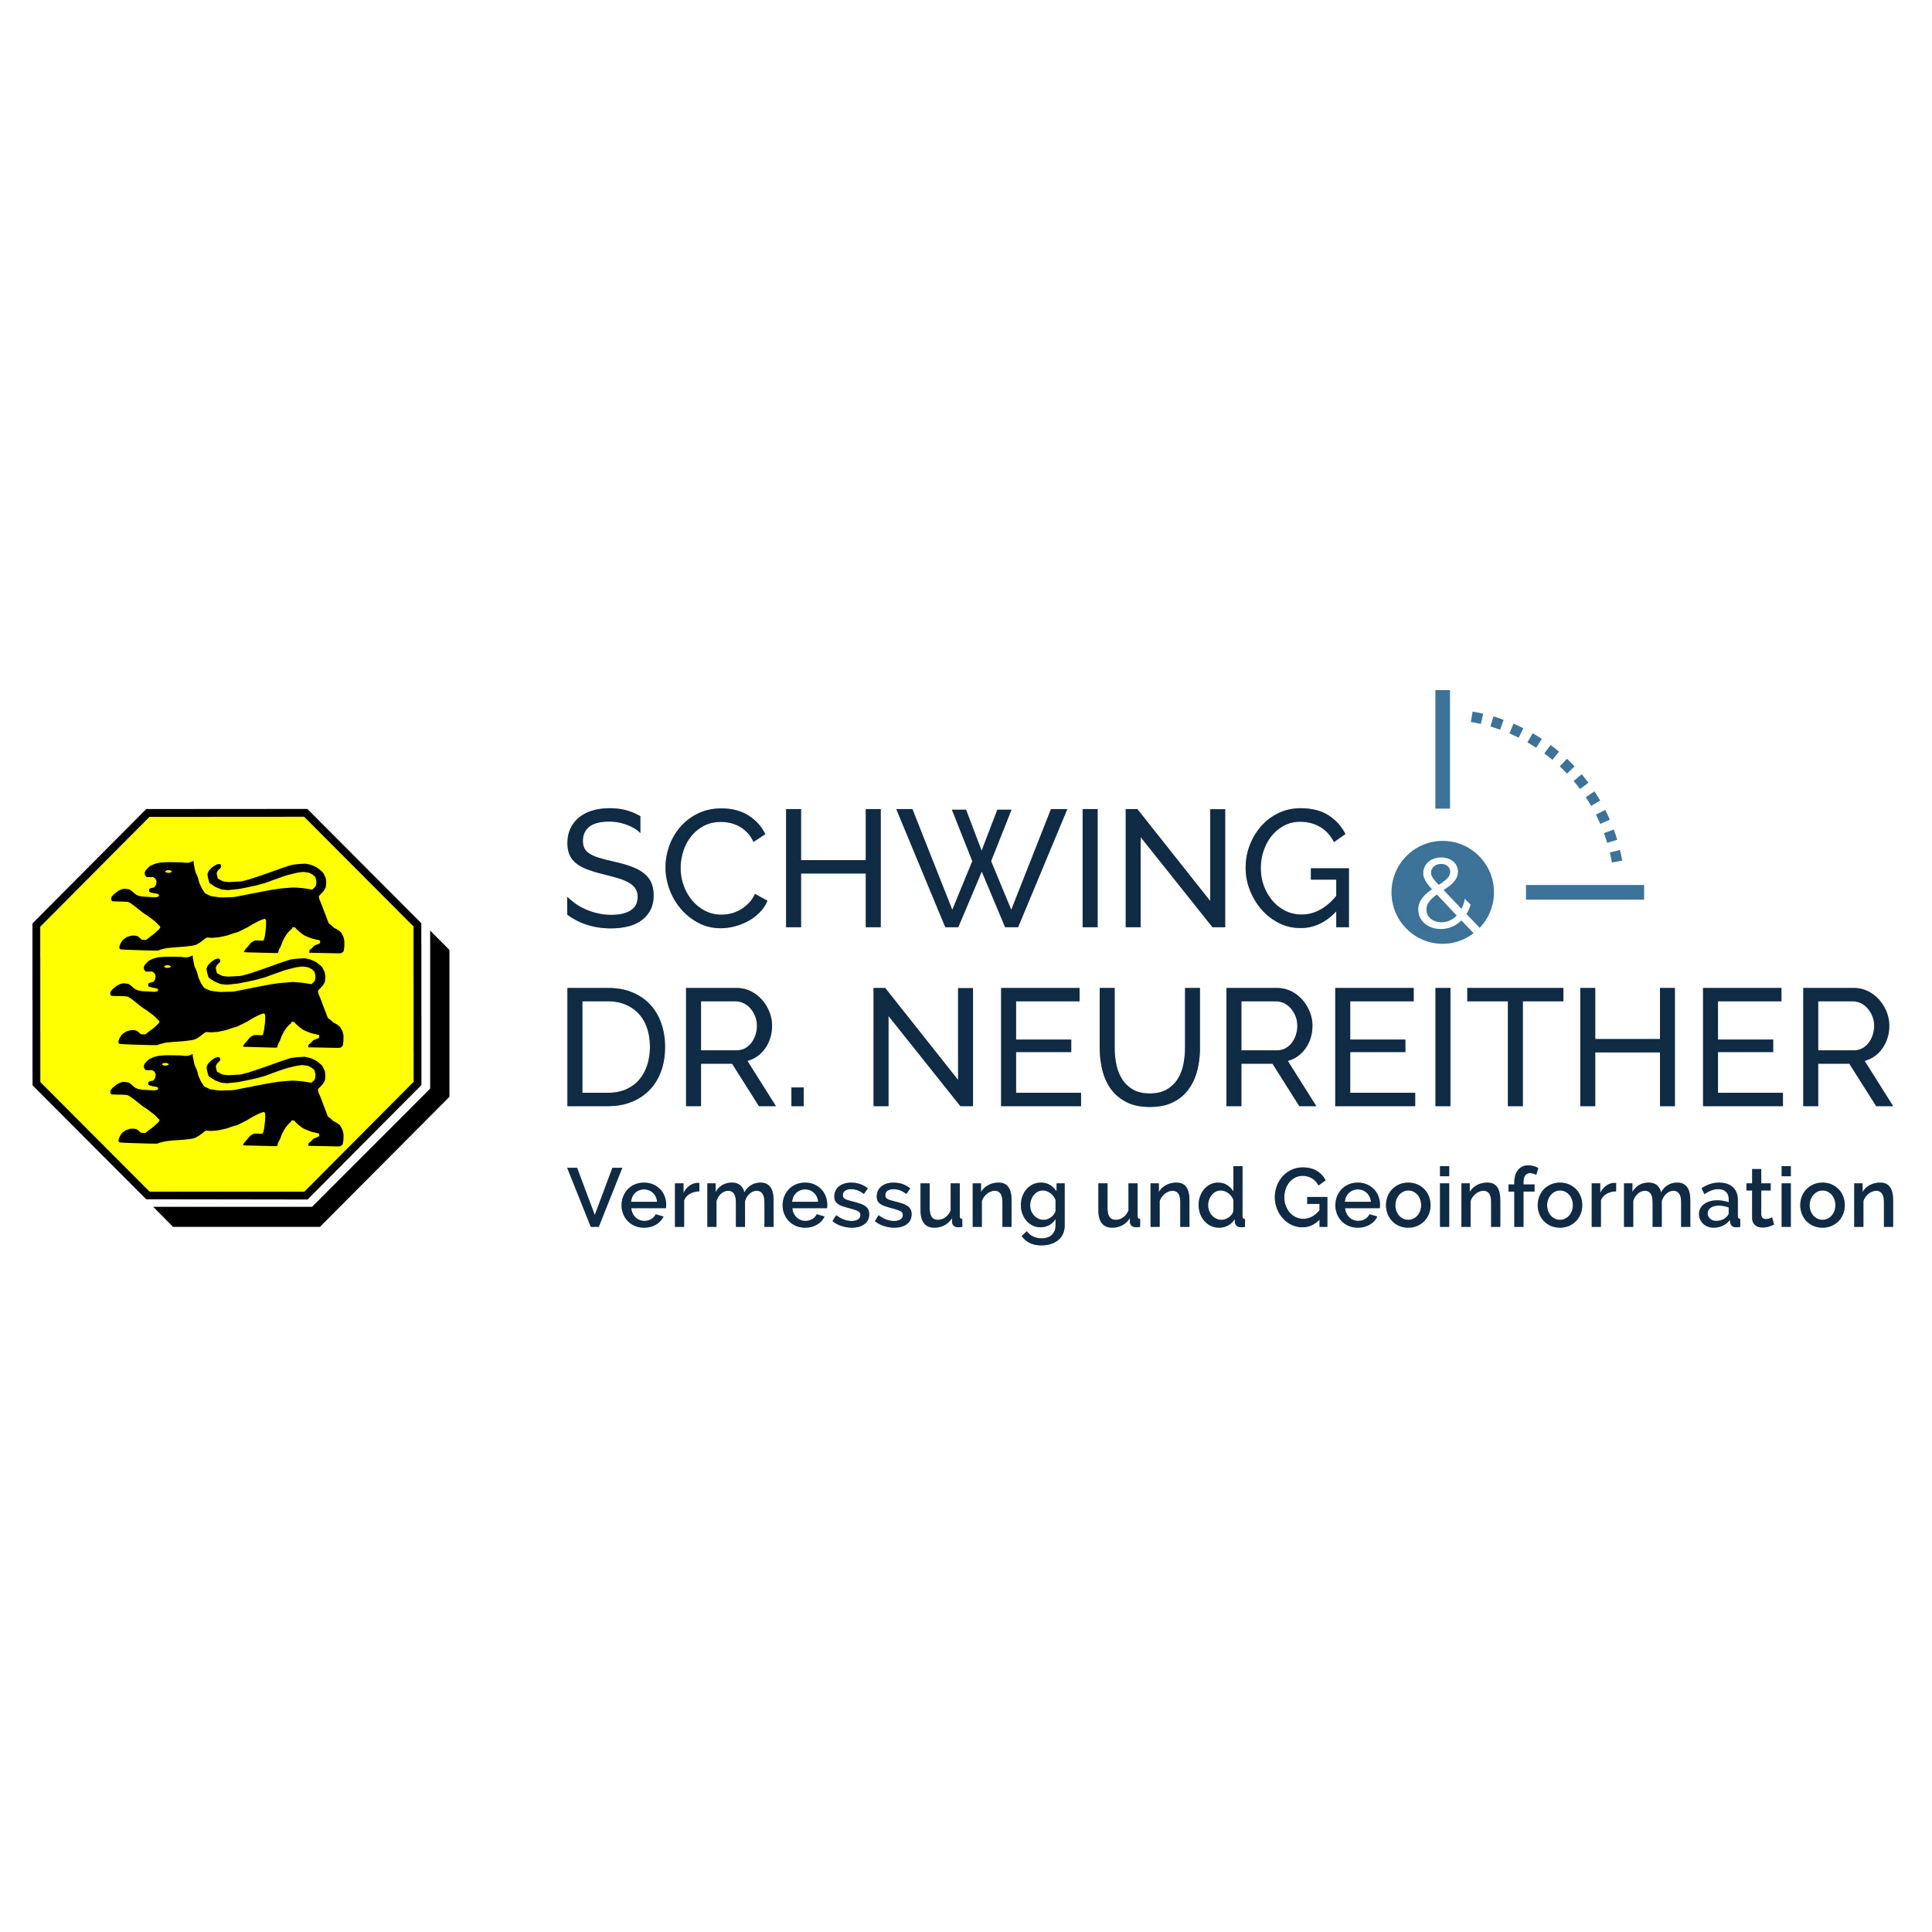 Vermessungsbüro Schwing & Dr. Neureither Logo